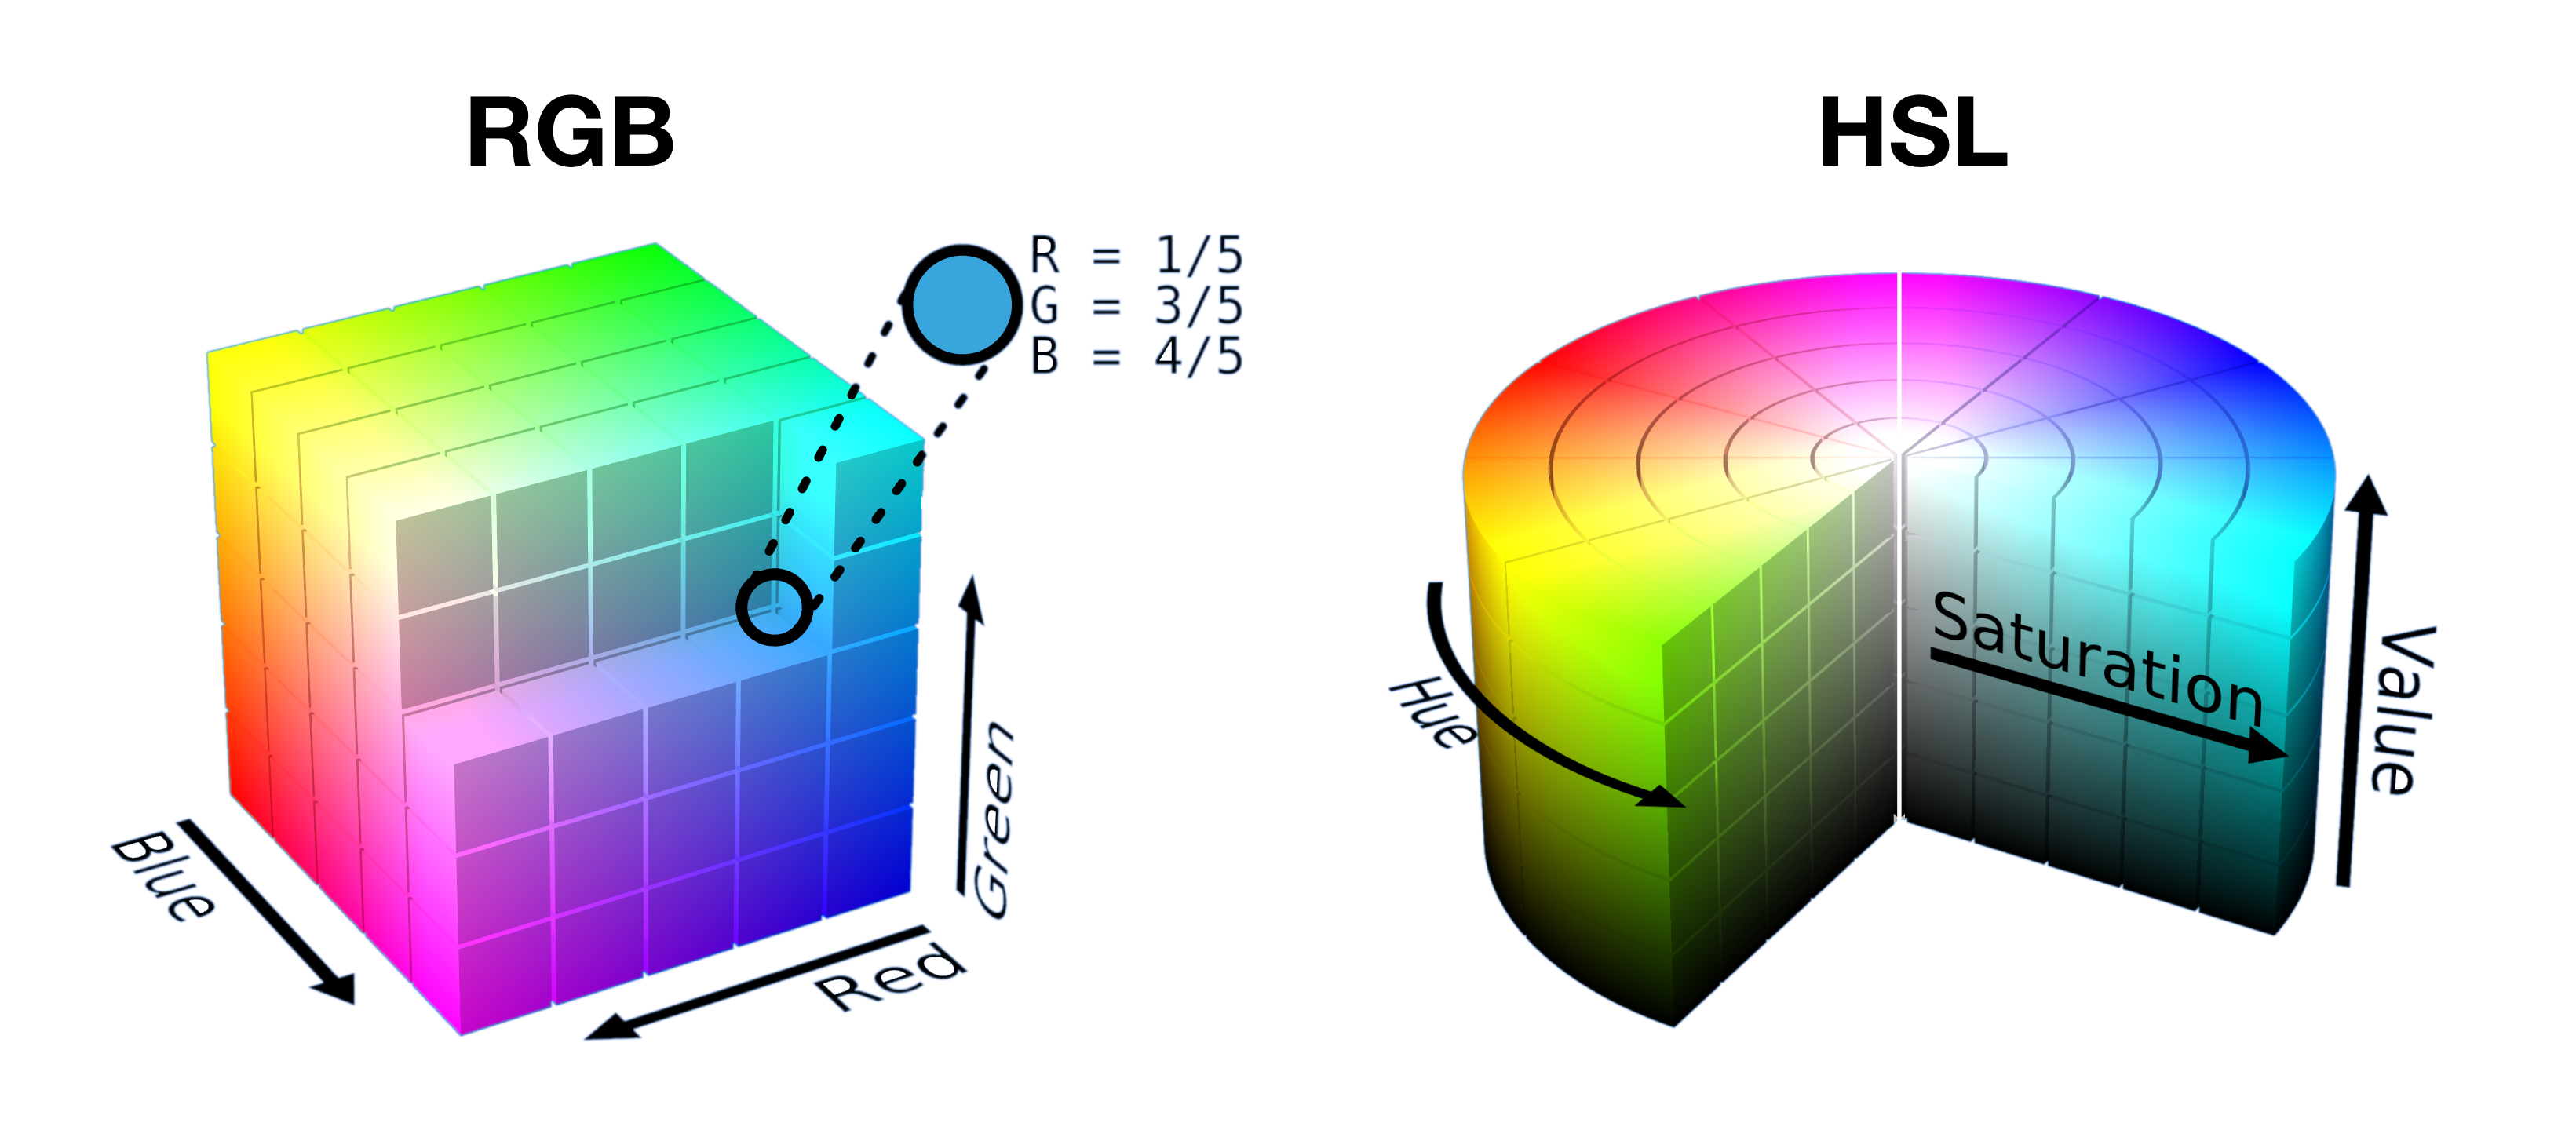 ハーフカットされたオープン RGB キューブと HSL 円柱状のスライスを並べて表示し、各空間で色がどのように 1 つの形状に詰められるかを示しています。